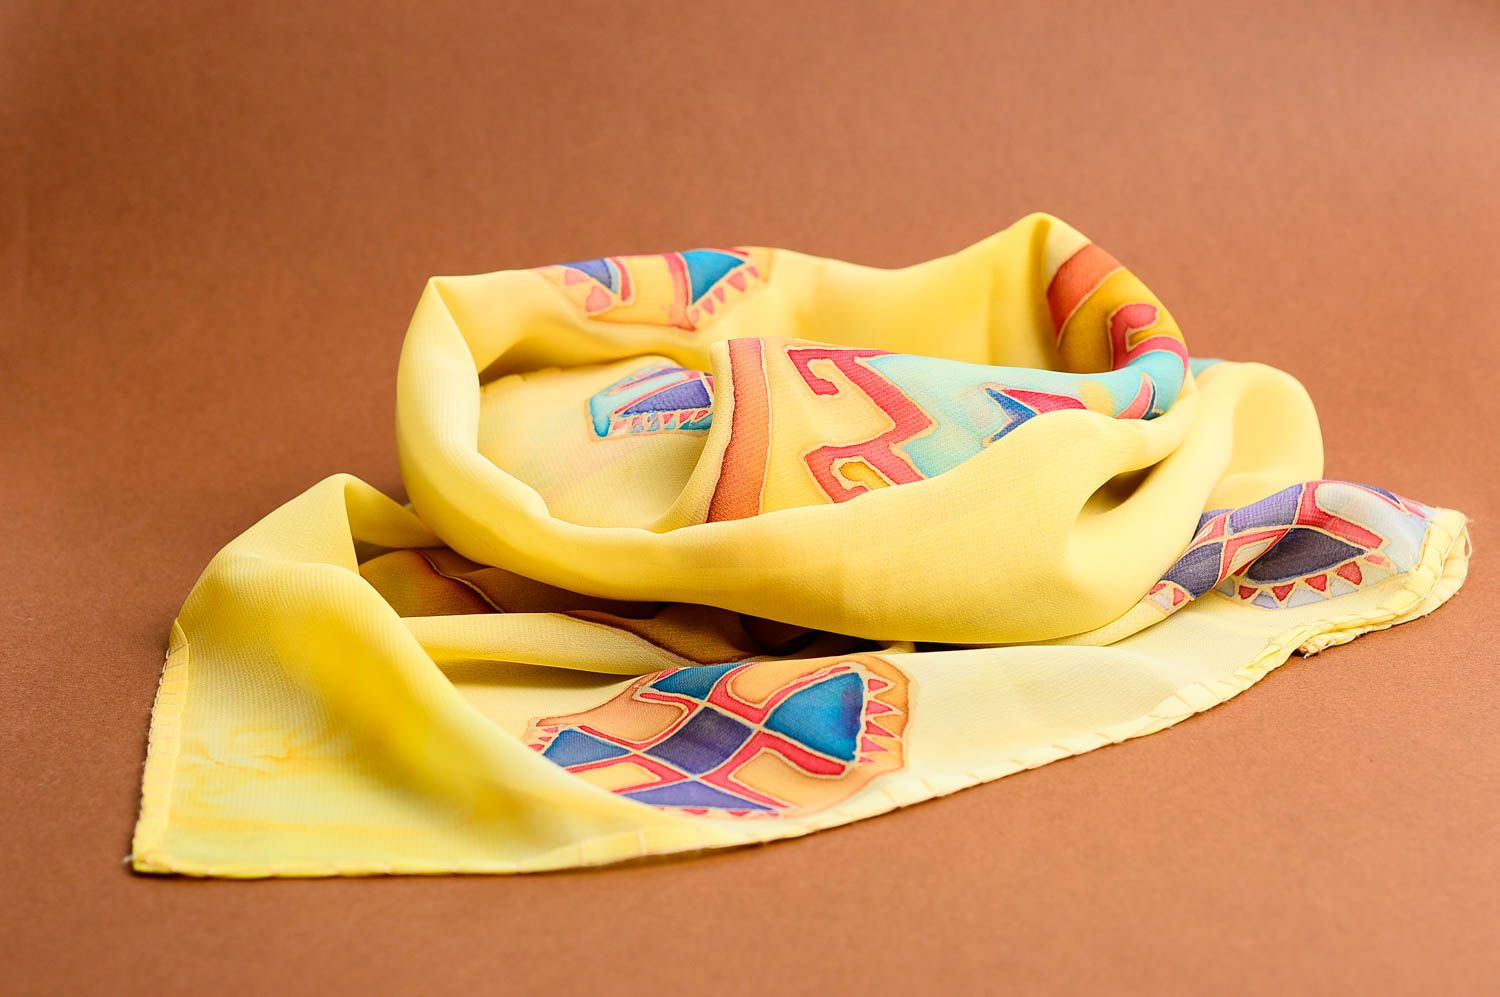 Unusual handmade chiffon scarf stylish women outfit batik ideas small gifts photo 3